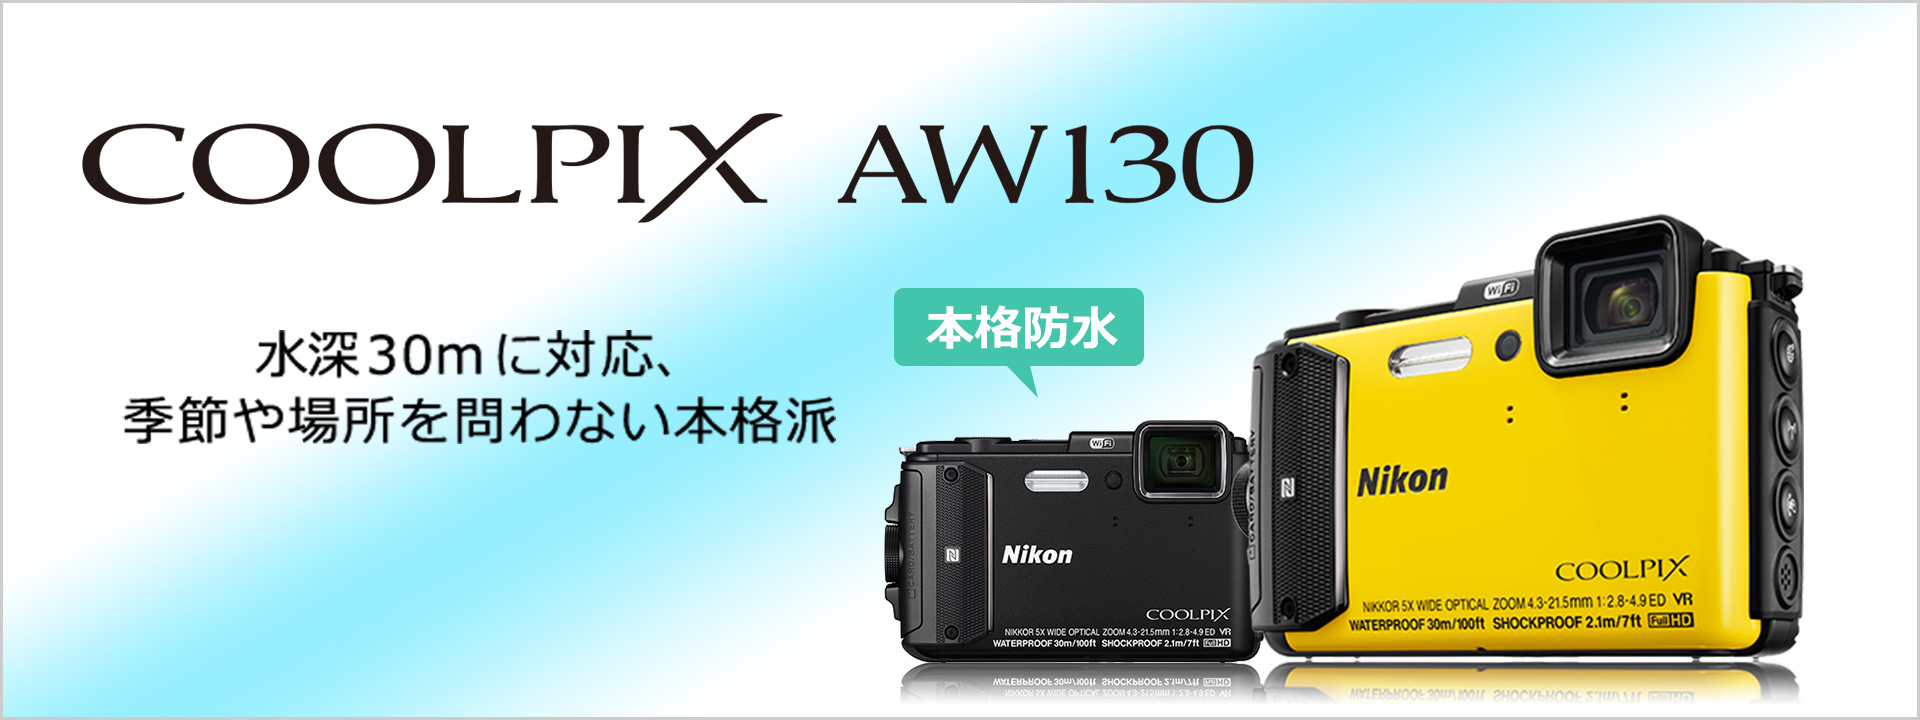 Nikon ニコン デジカメ 防水 COOLPIX AW130 - コンパクトデジタルカメラ